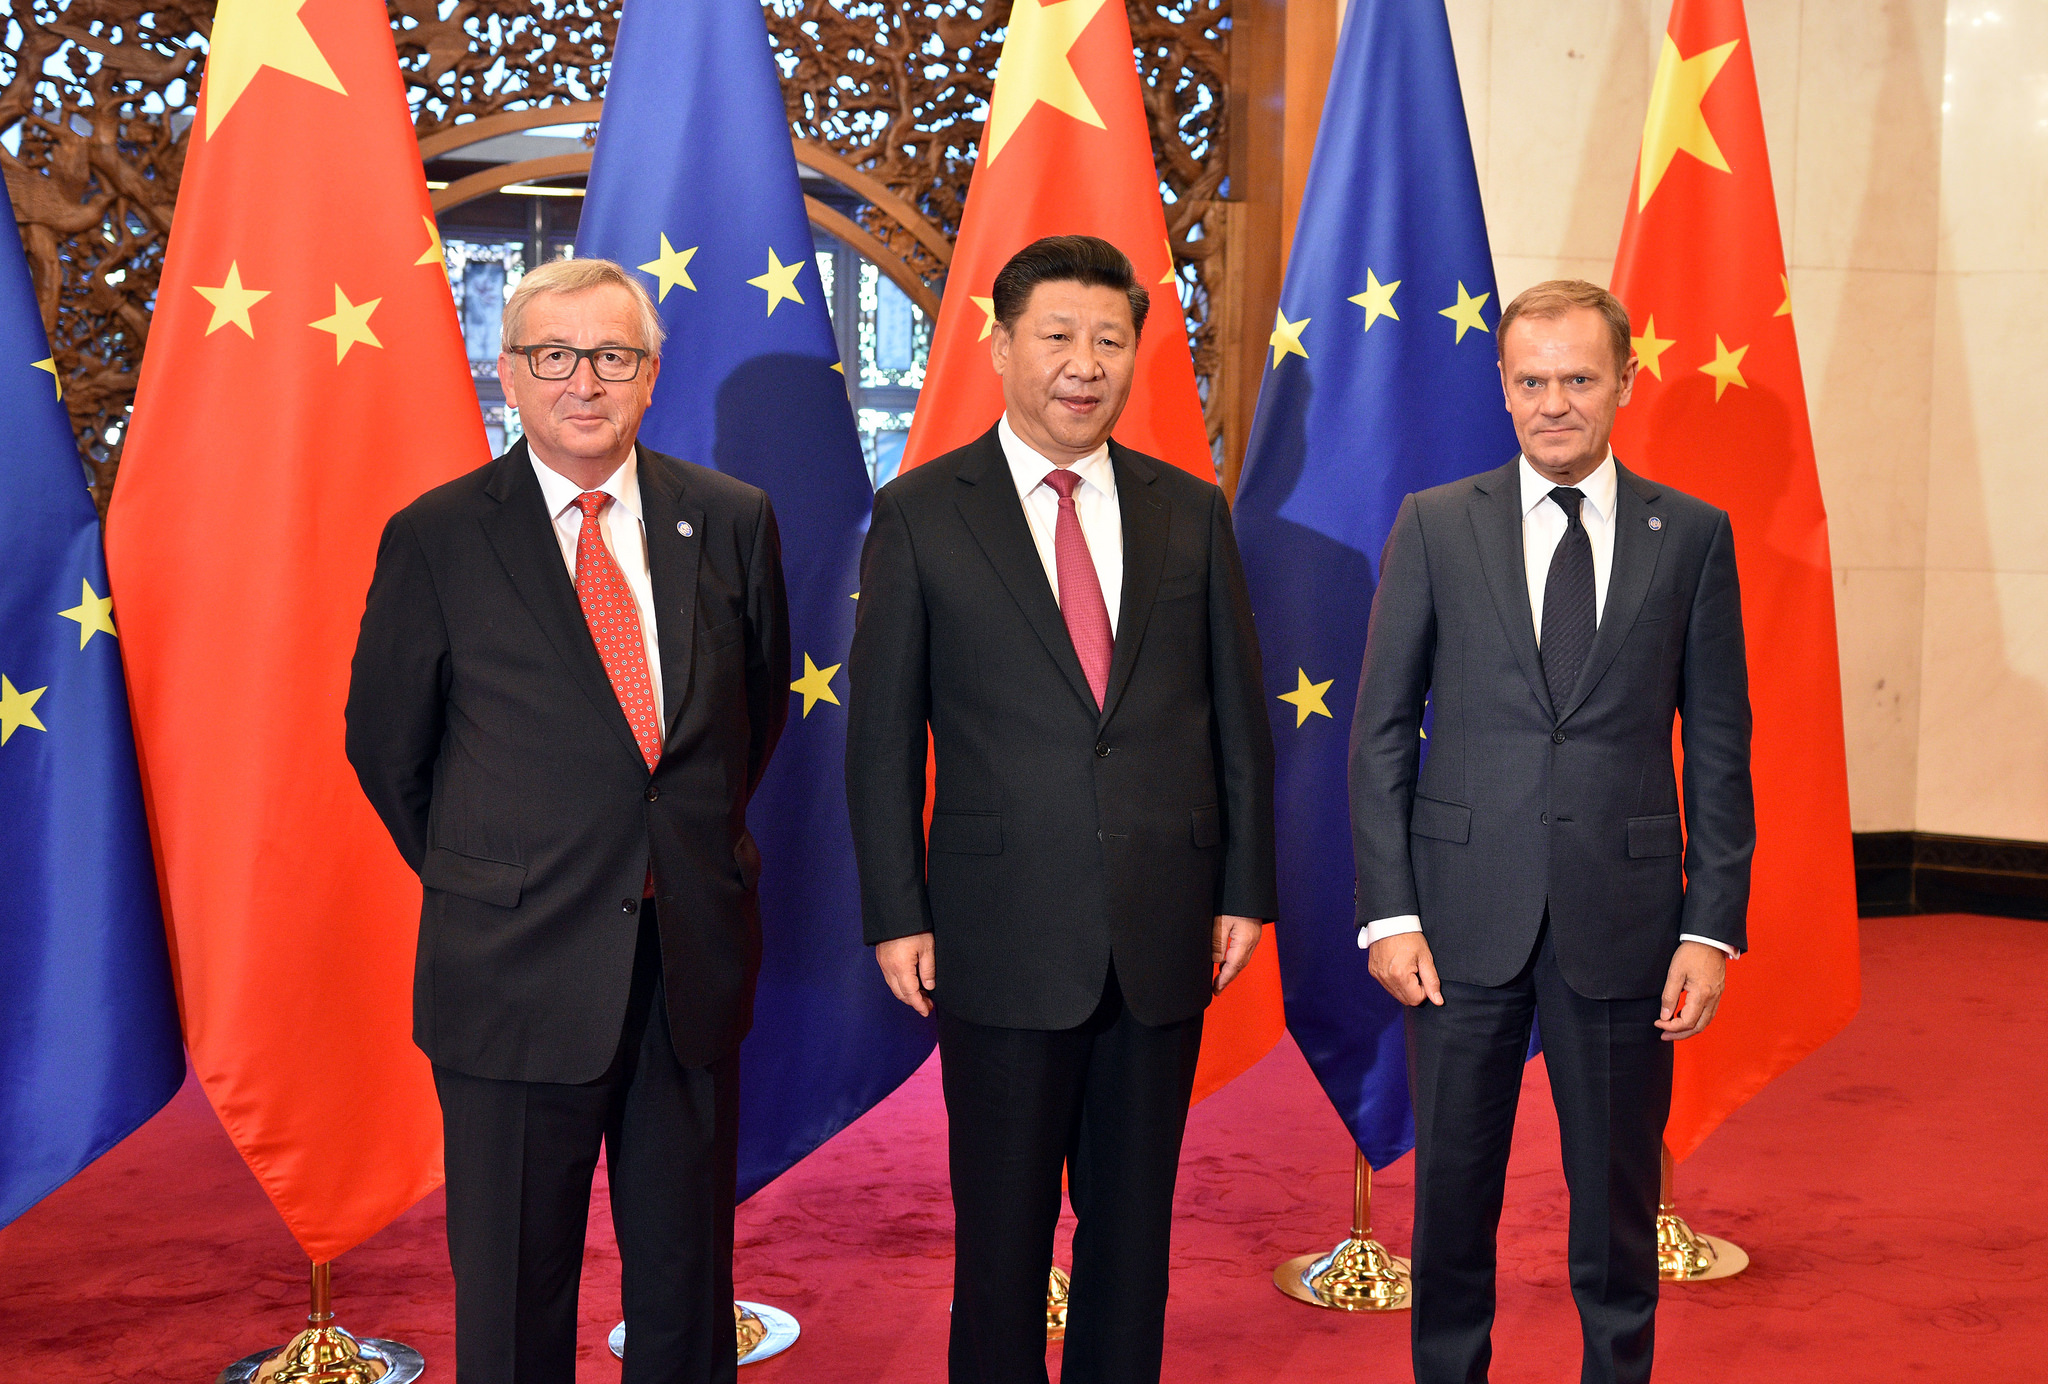 EU-China Summit 2016